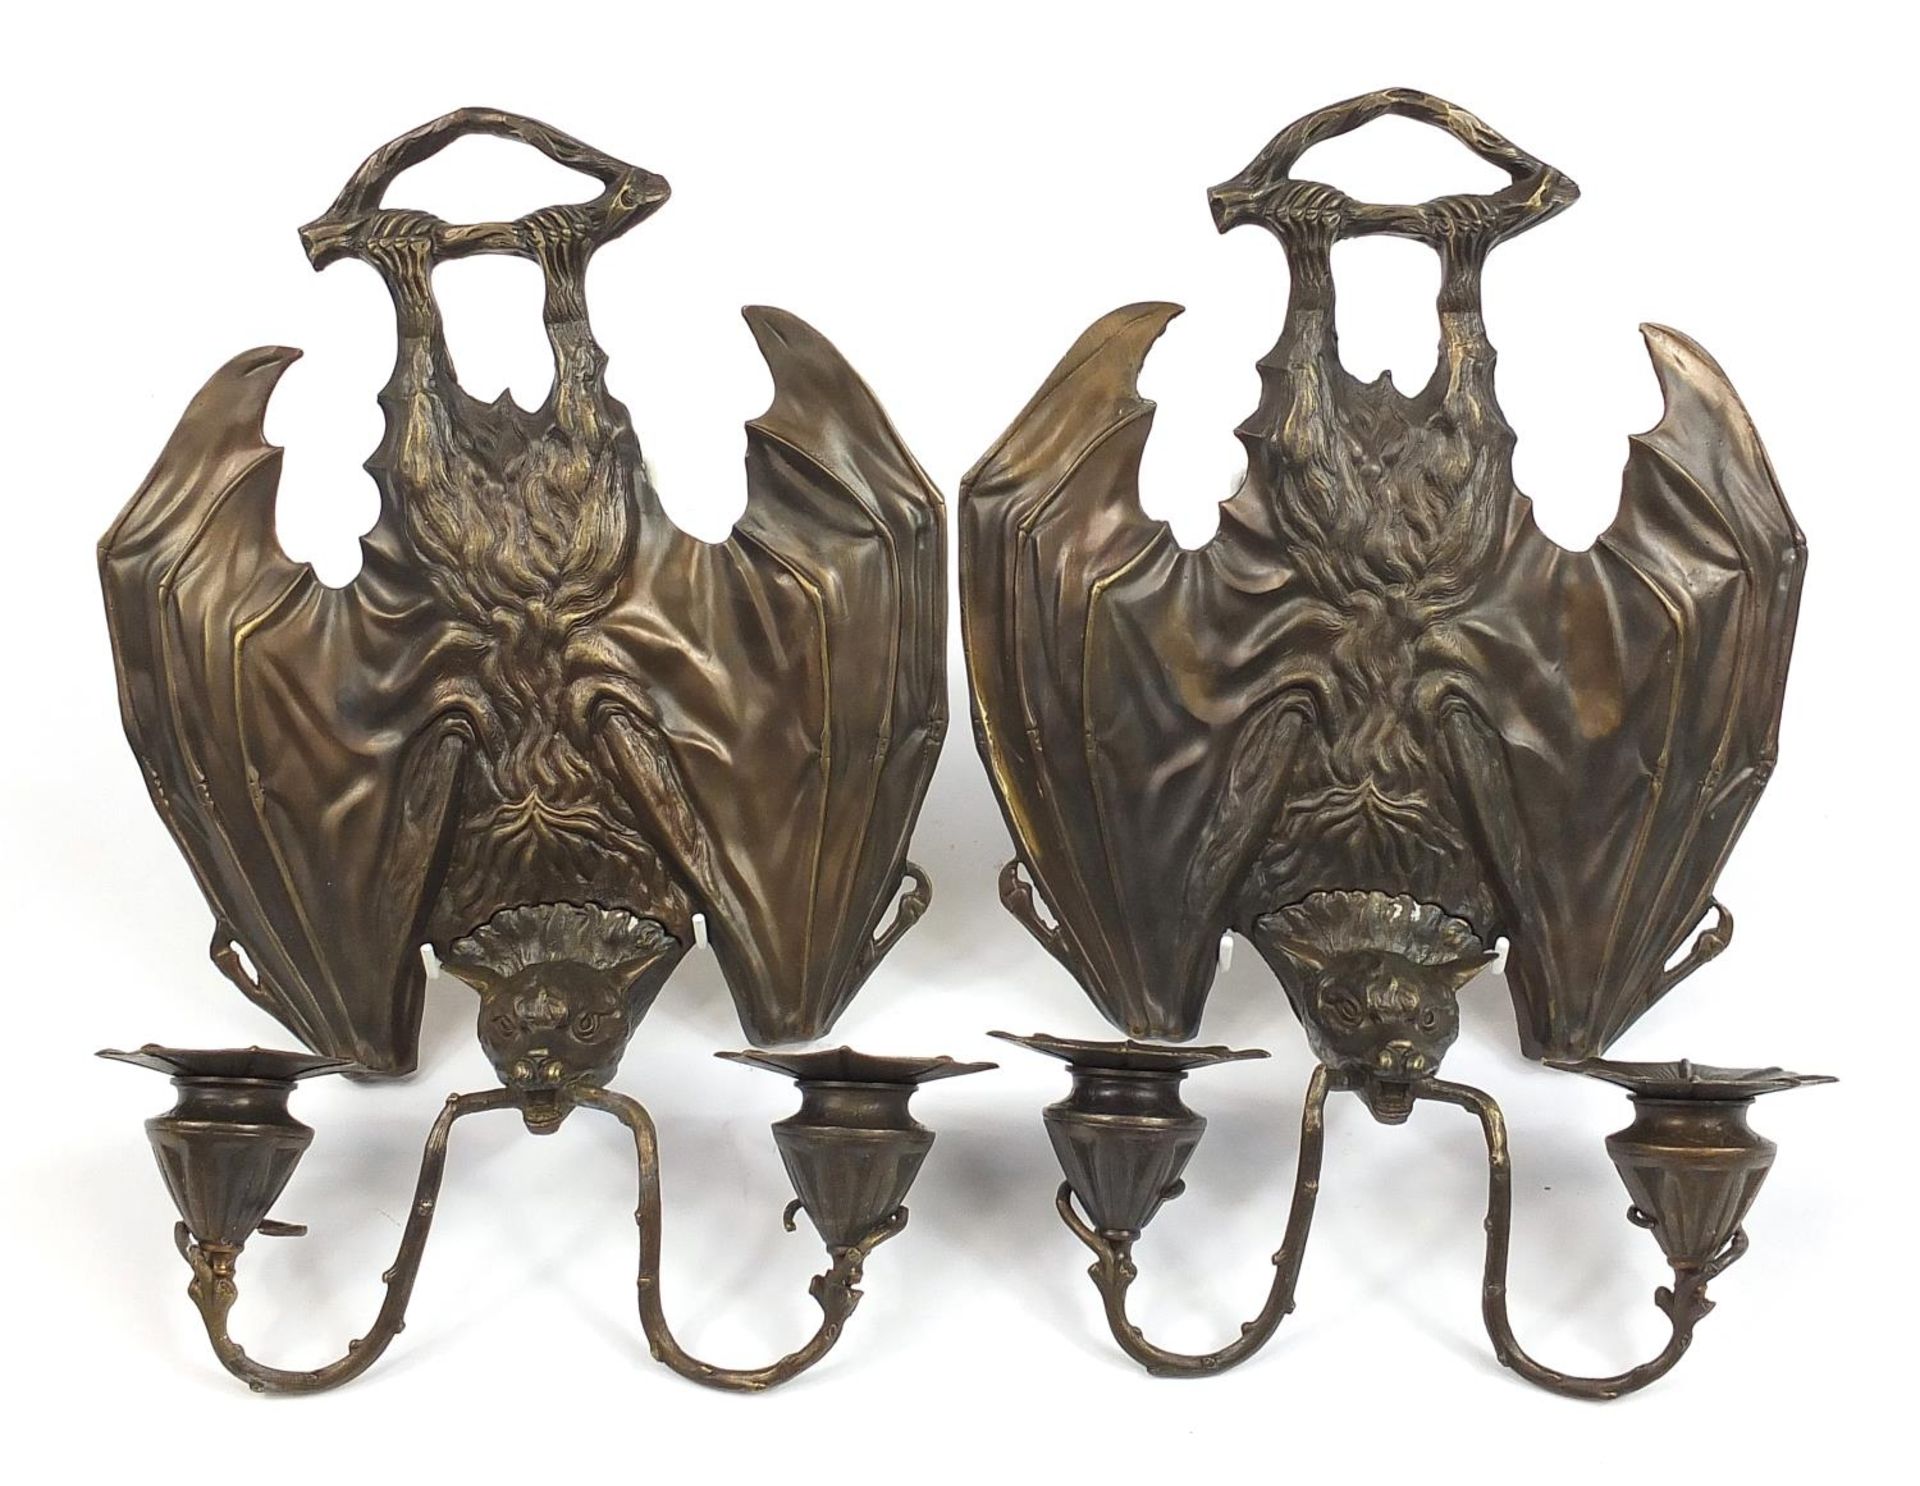 Pair of Art Nouveau style bat design patinated bronze wall sconces, each 35cm high